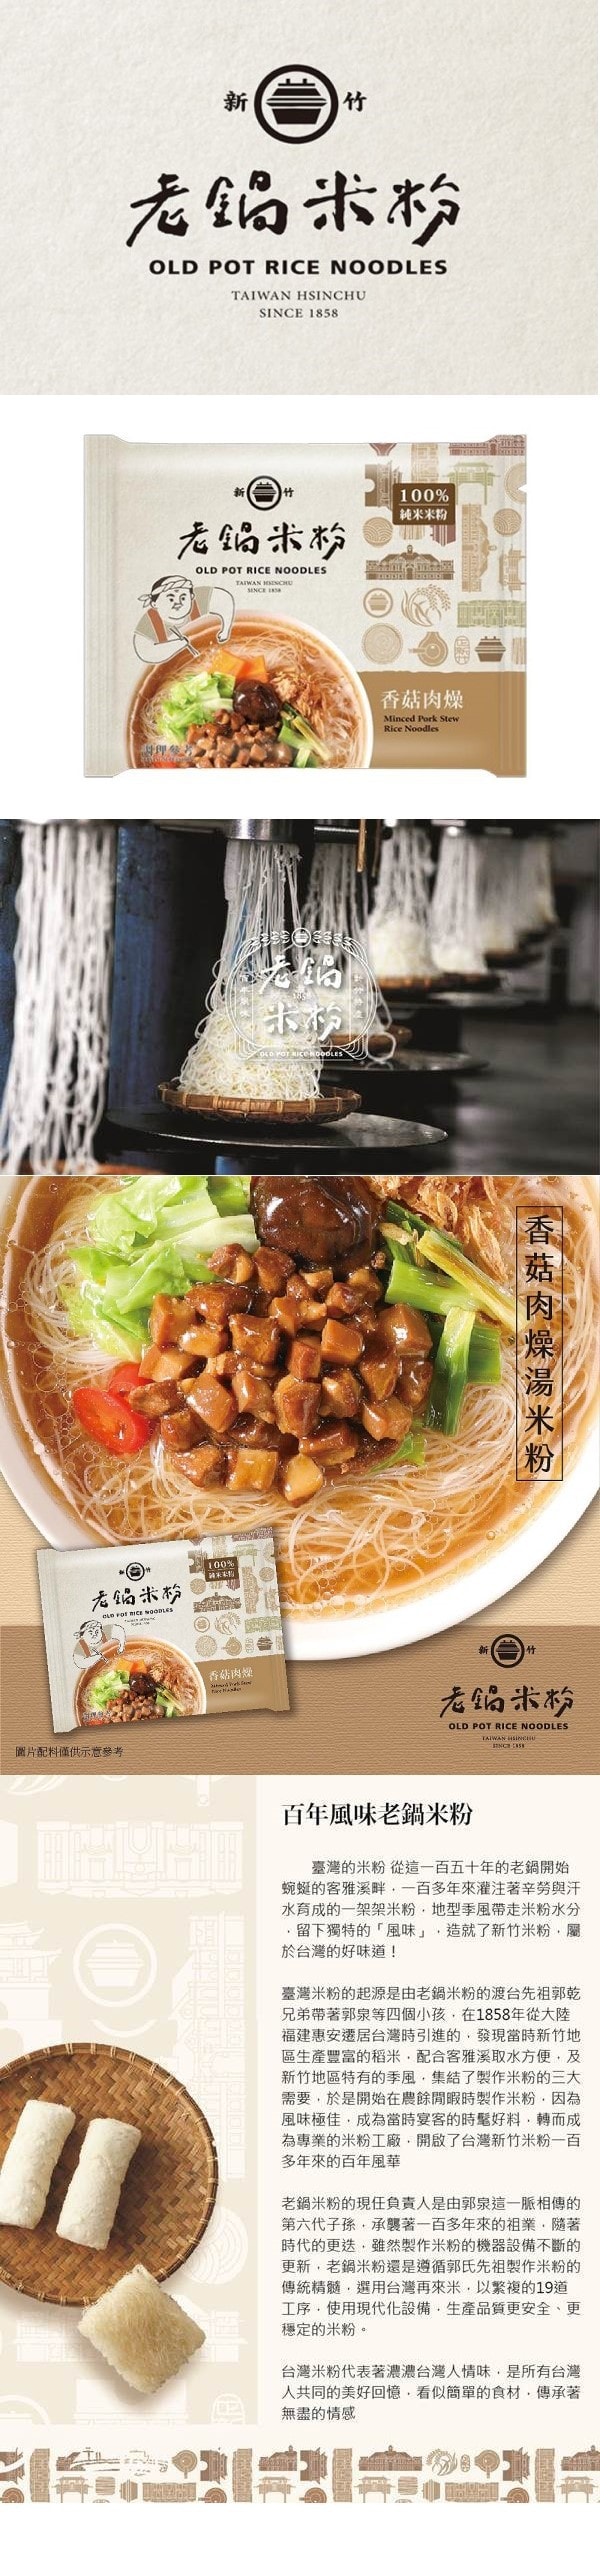 [台湾直邮] 老锅米粉 香菇肉燥风味汤米粉 60g 单包